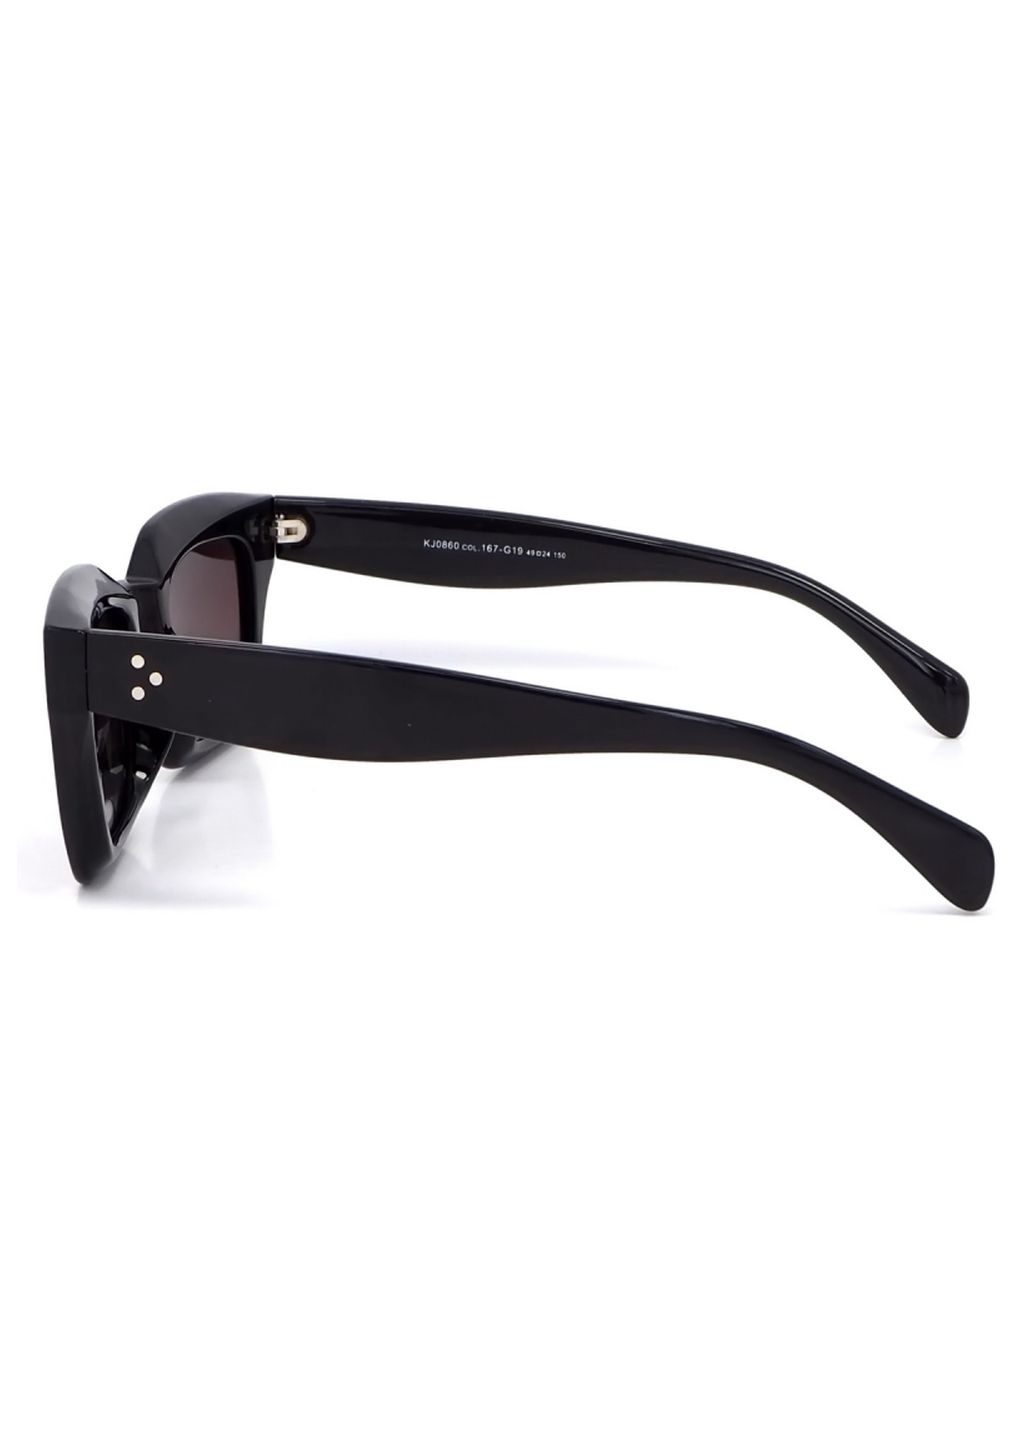 Купить Женские солнцезащитные очки Katrin Jones с поляризацией KJ0860 180044 - Коричневый в интернет-магазине